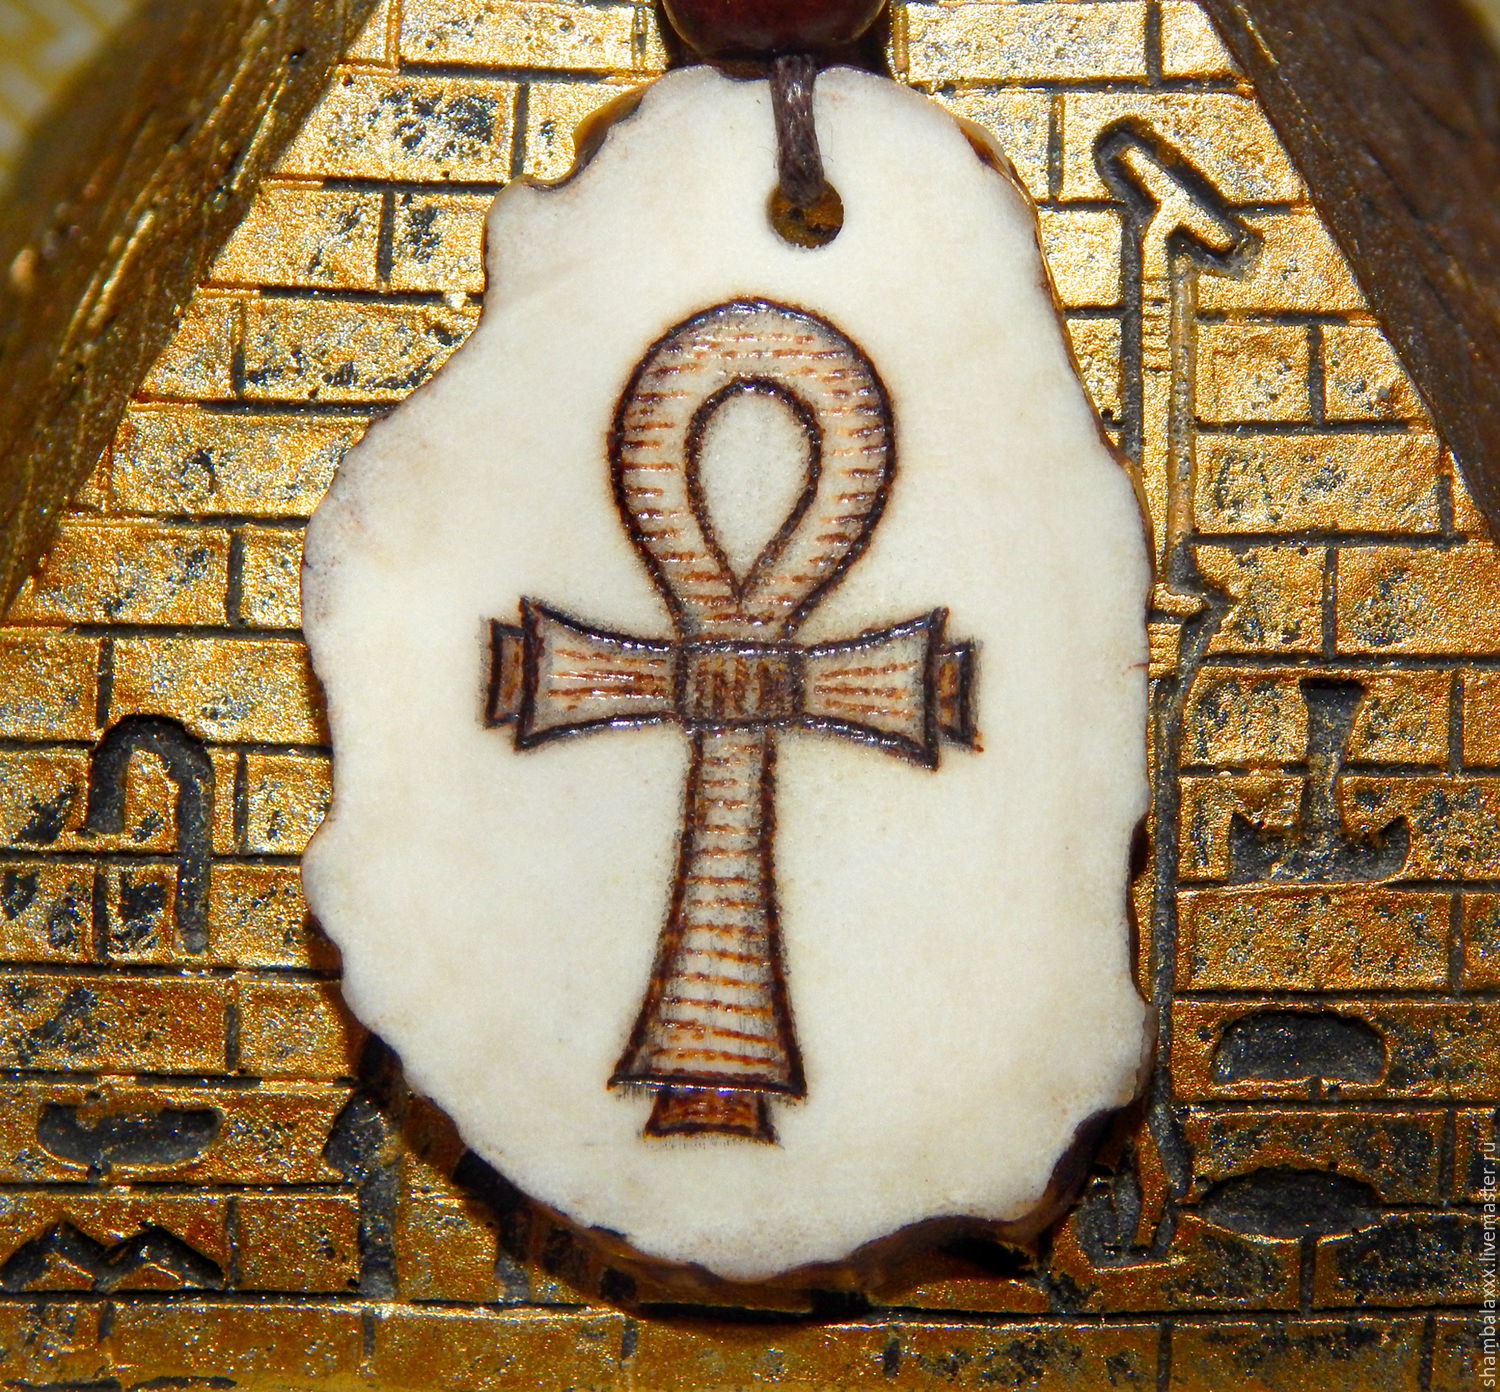 Egyptian Ankh Amulet